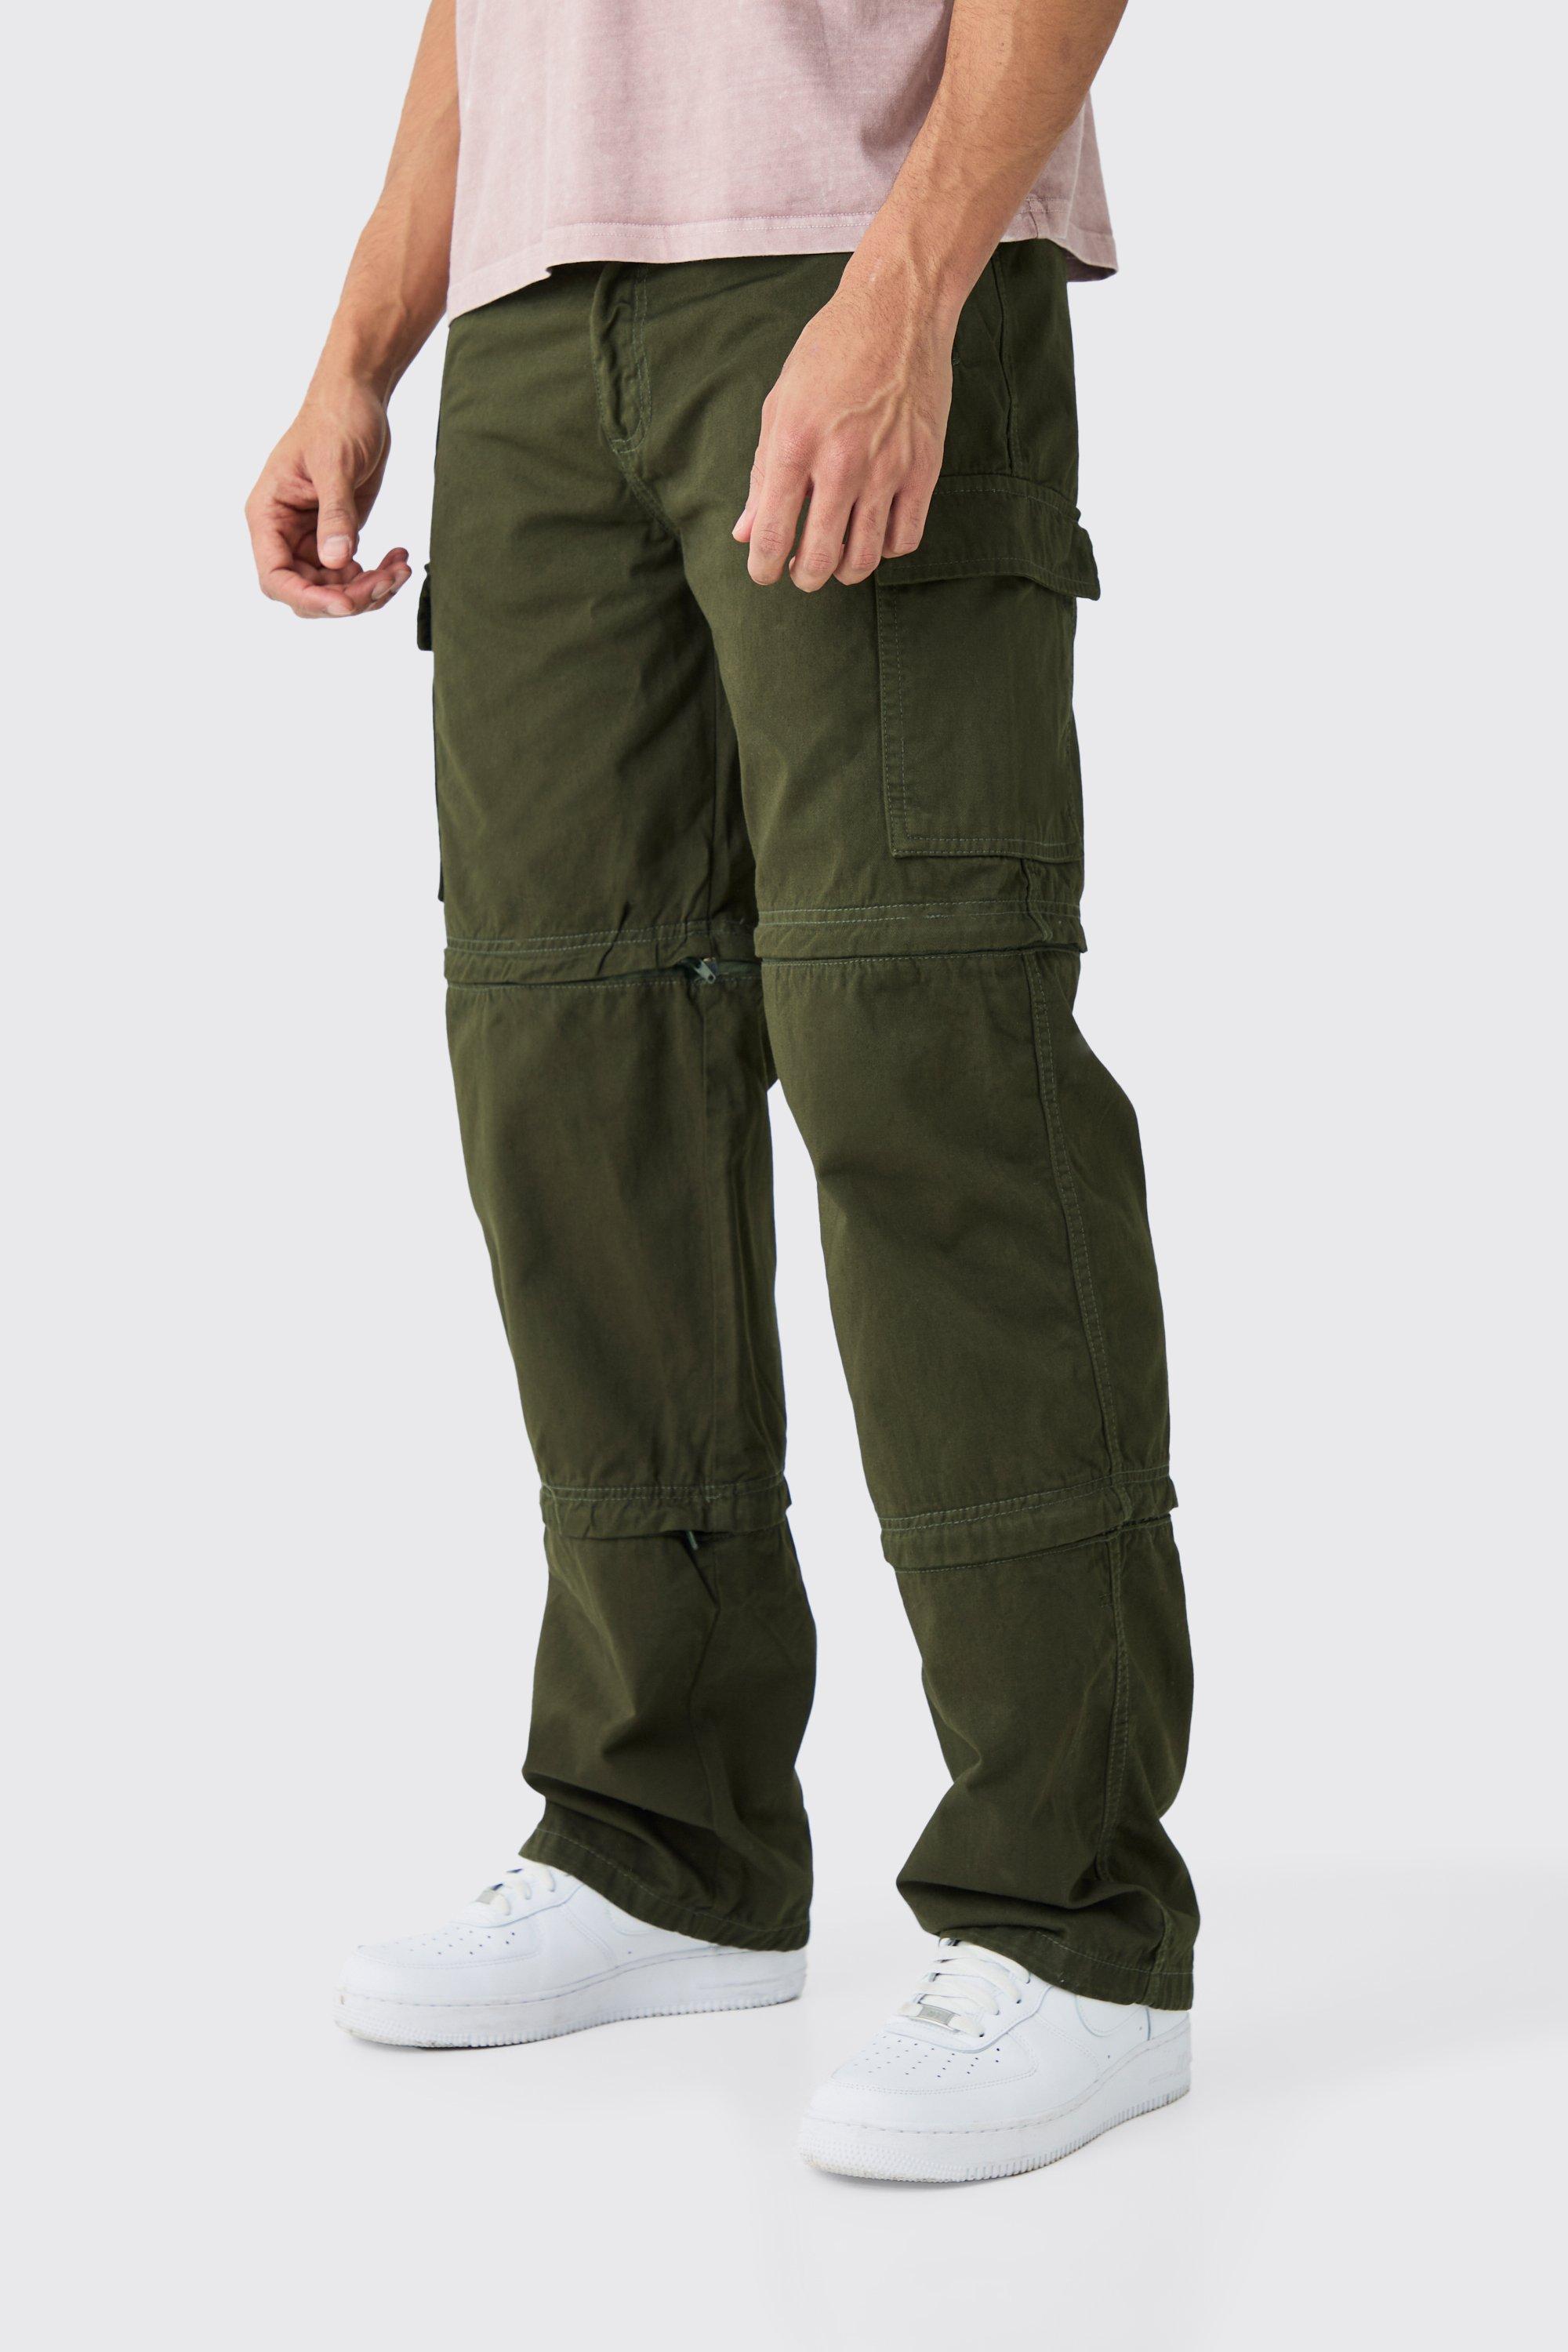 Image of Pantaloni extra comodi con zip e pannelli in vita fissi, Verde